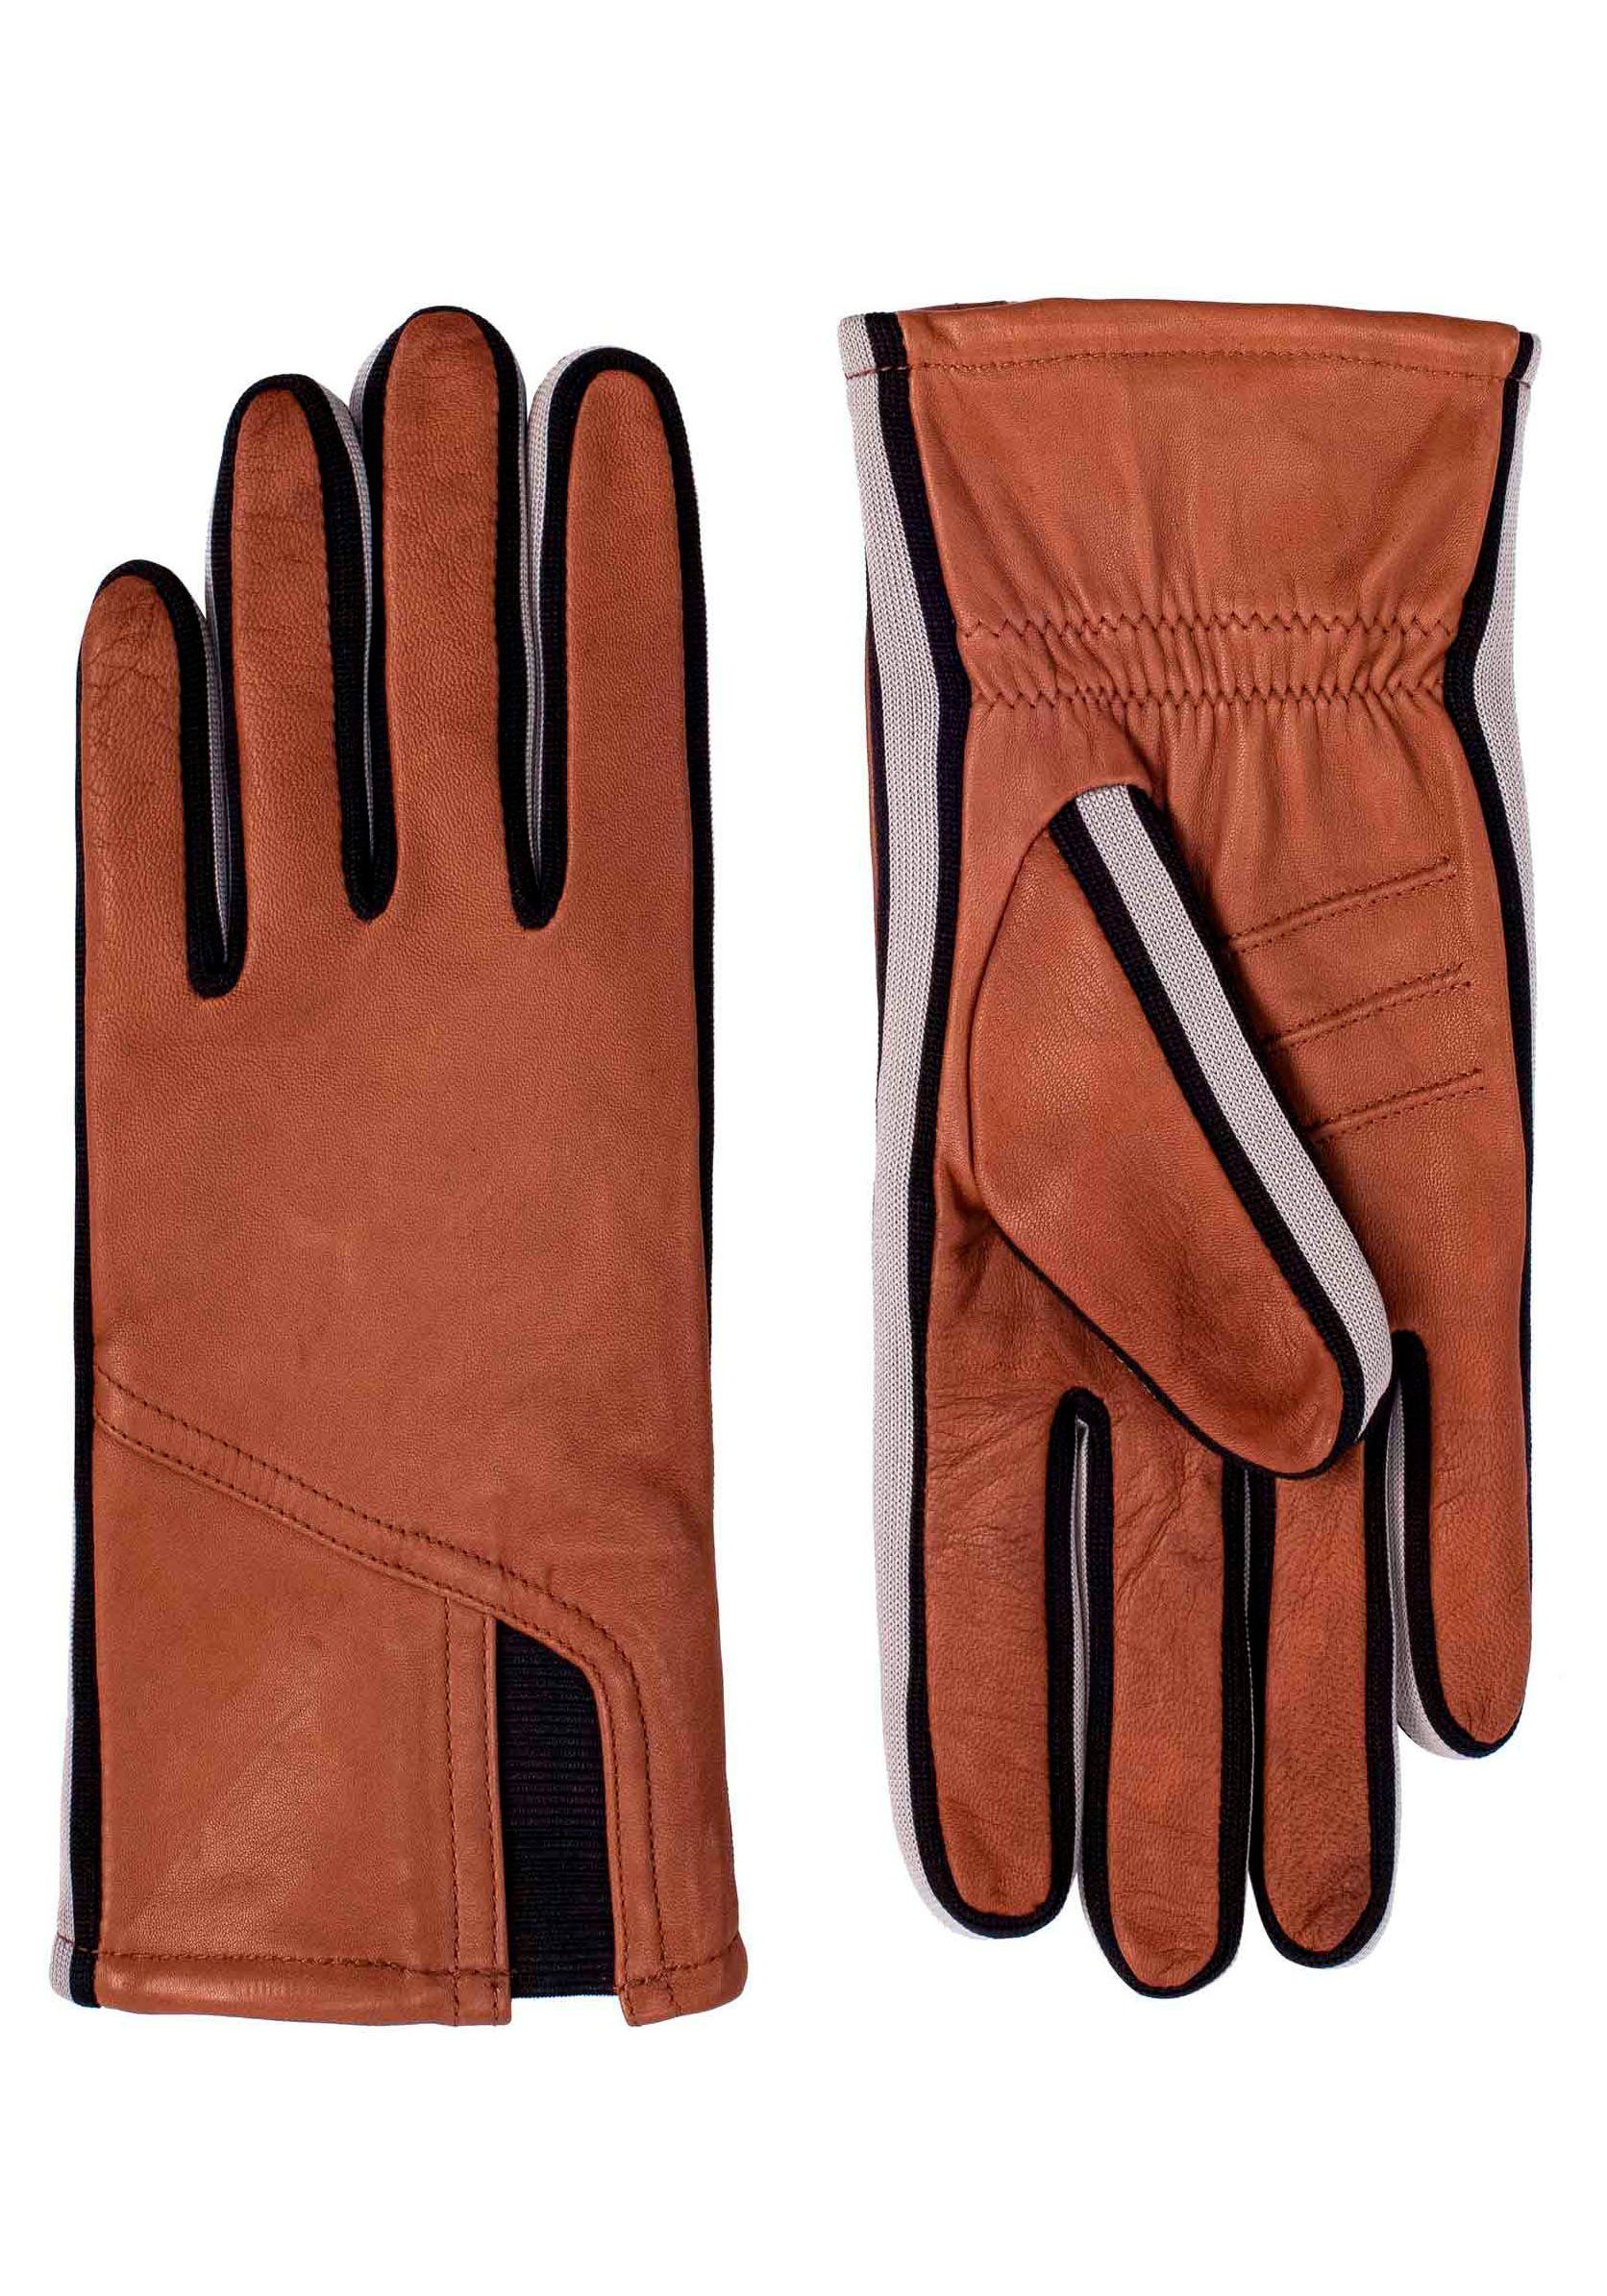 Sneaker- sportliches Touch medium brown Lederhandschuhe Touchfunktion Design KESSLER im Gil Look mit